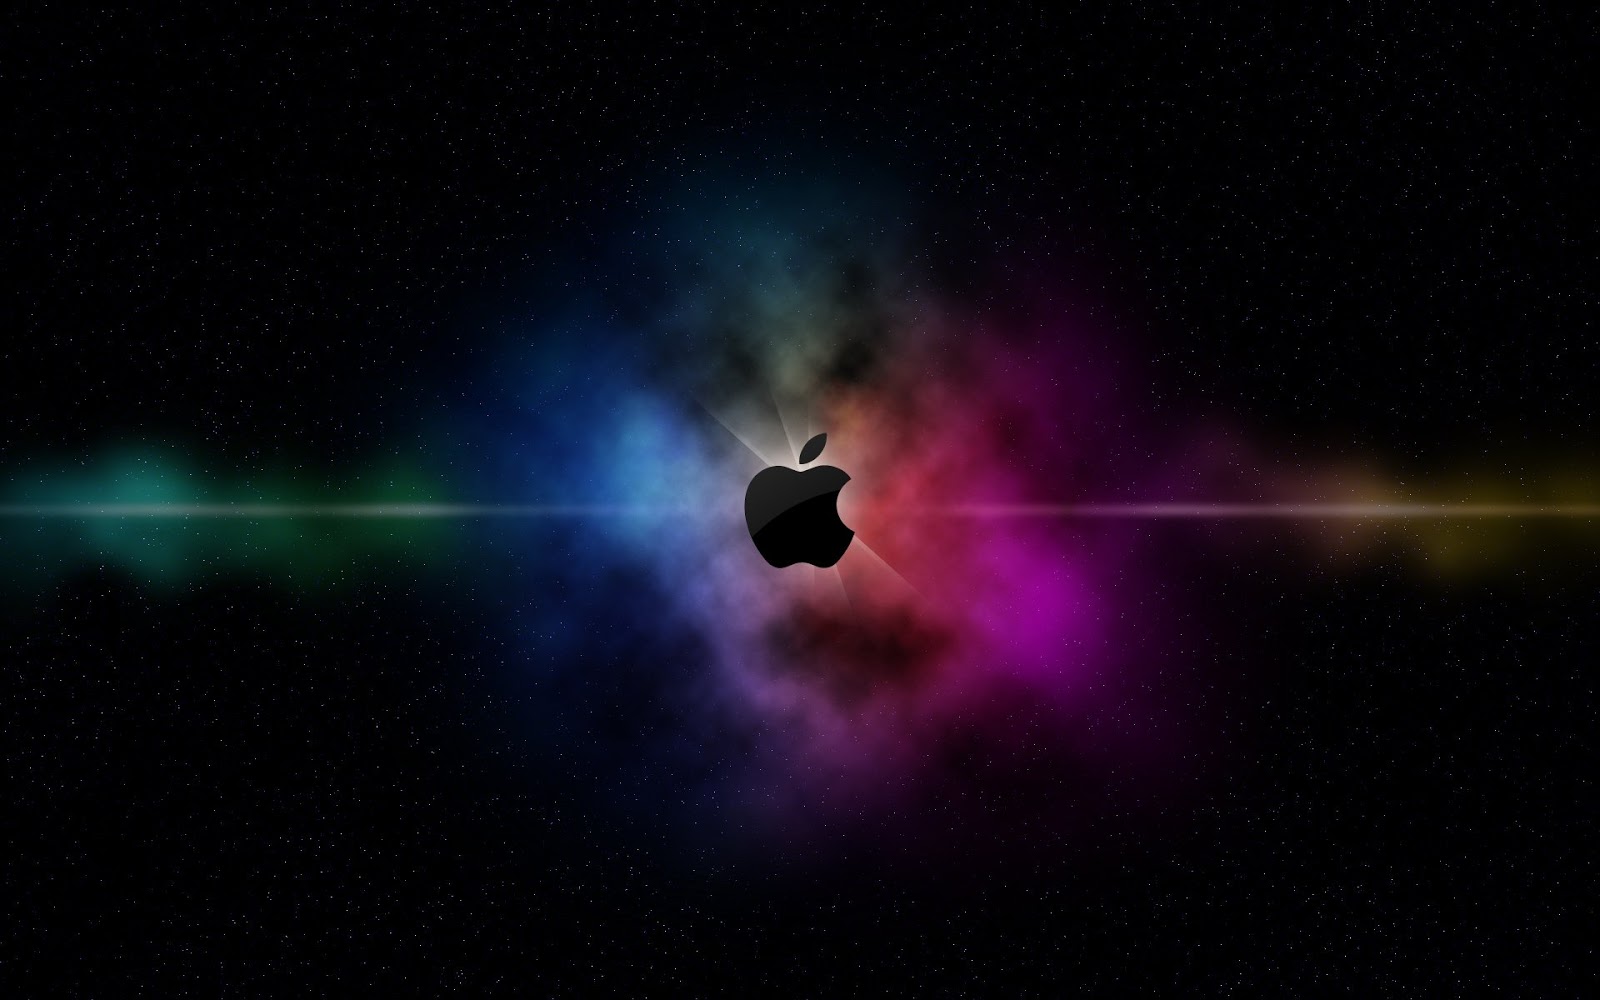 蘋果正在為 Windows 開發下一代 iTunes 應用程式 | Apple News, iTunes, macOS Catalina, Windows 10 | iPhone News 愛瘋了